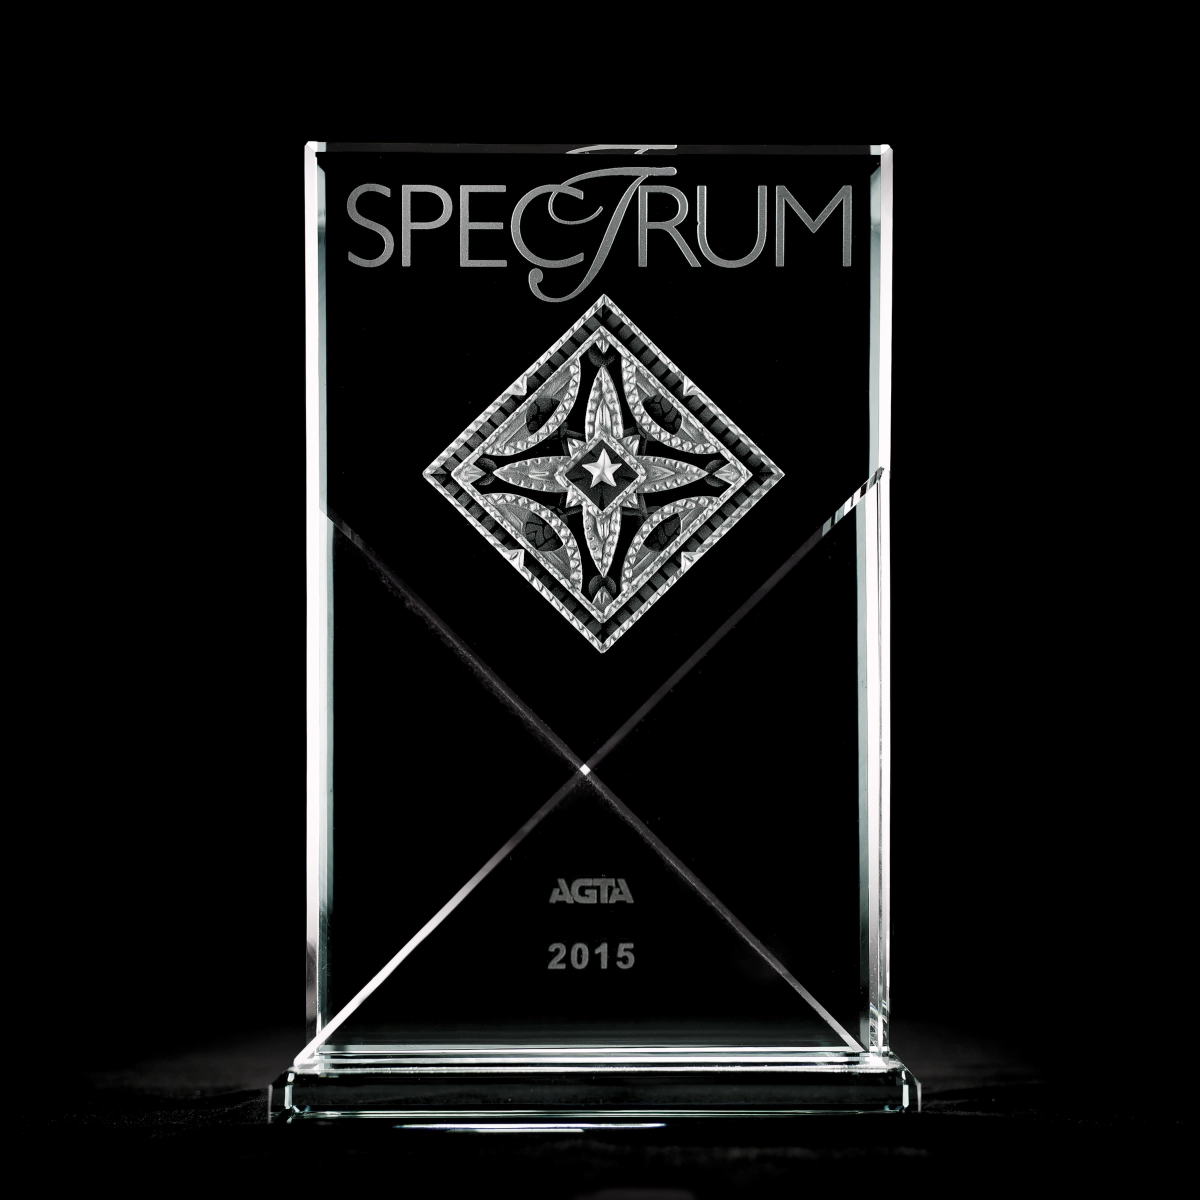 Leon Mege Spectrum 2015